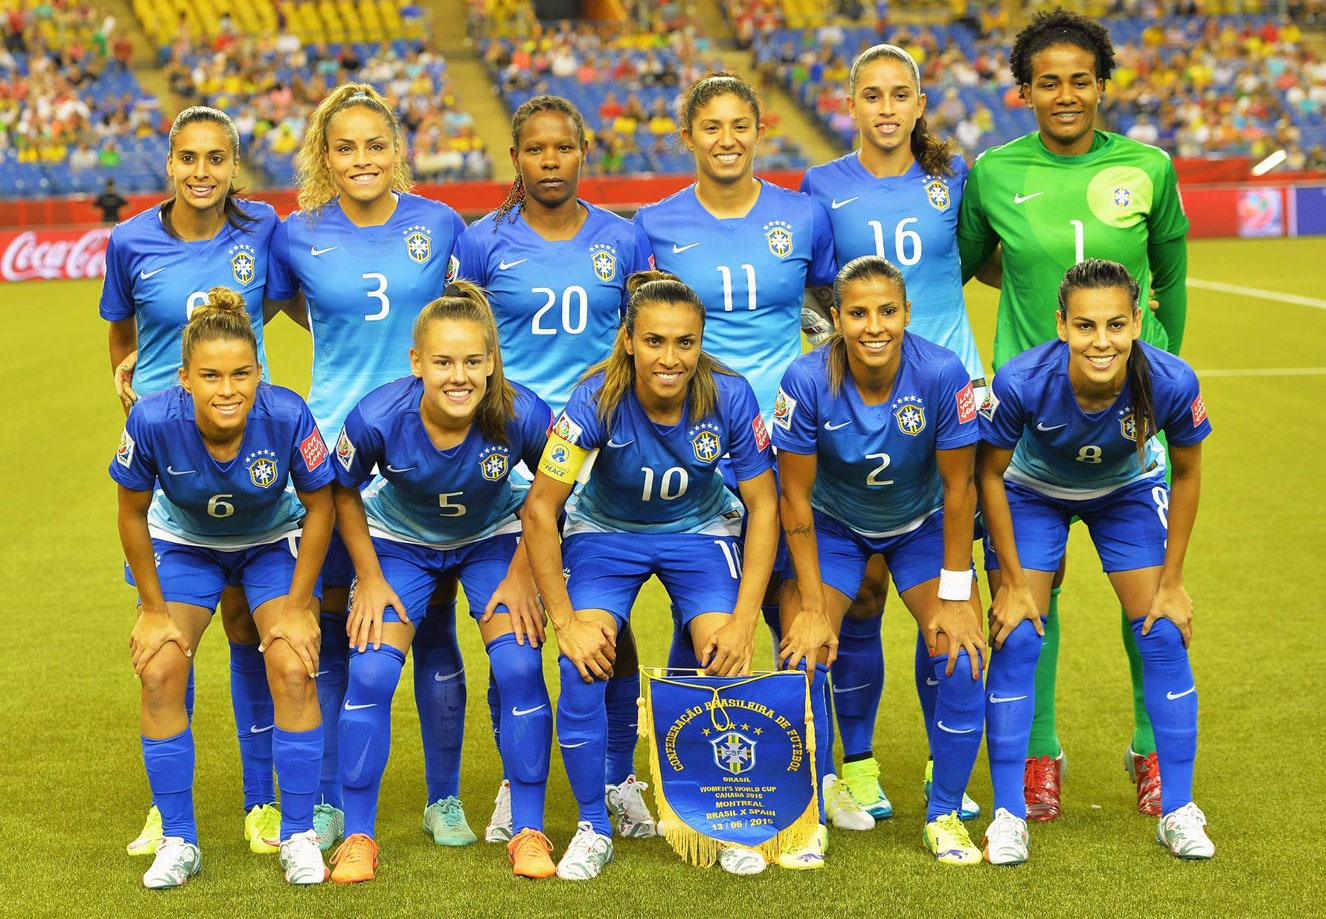 Seleção Brasileira Feminina de Futebol | Facebook Oficial da CBF 